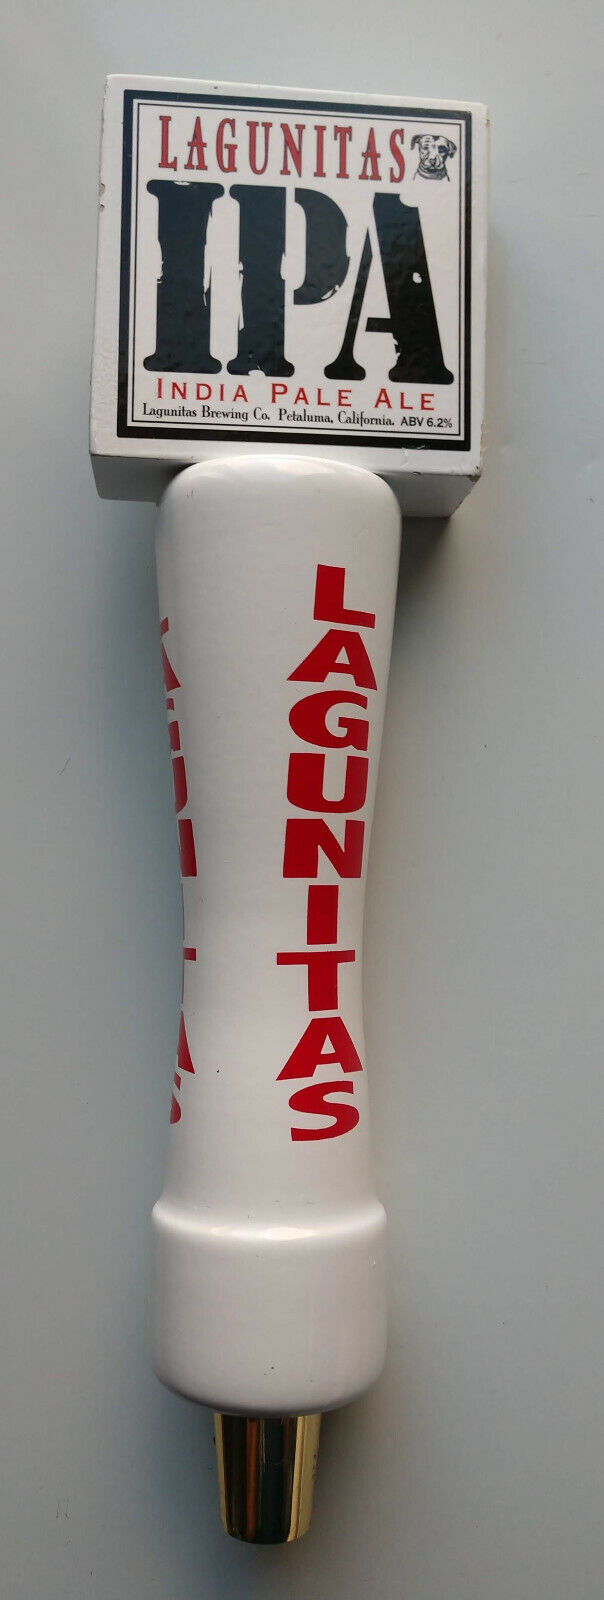 Lagunitas IPA India Pale Ale Beer Tap Handle 10.5 inch